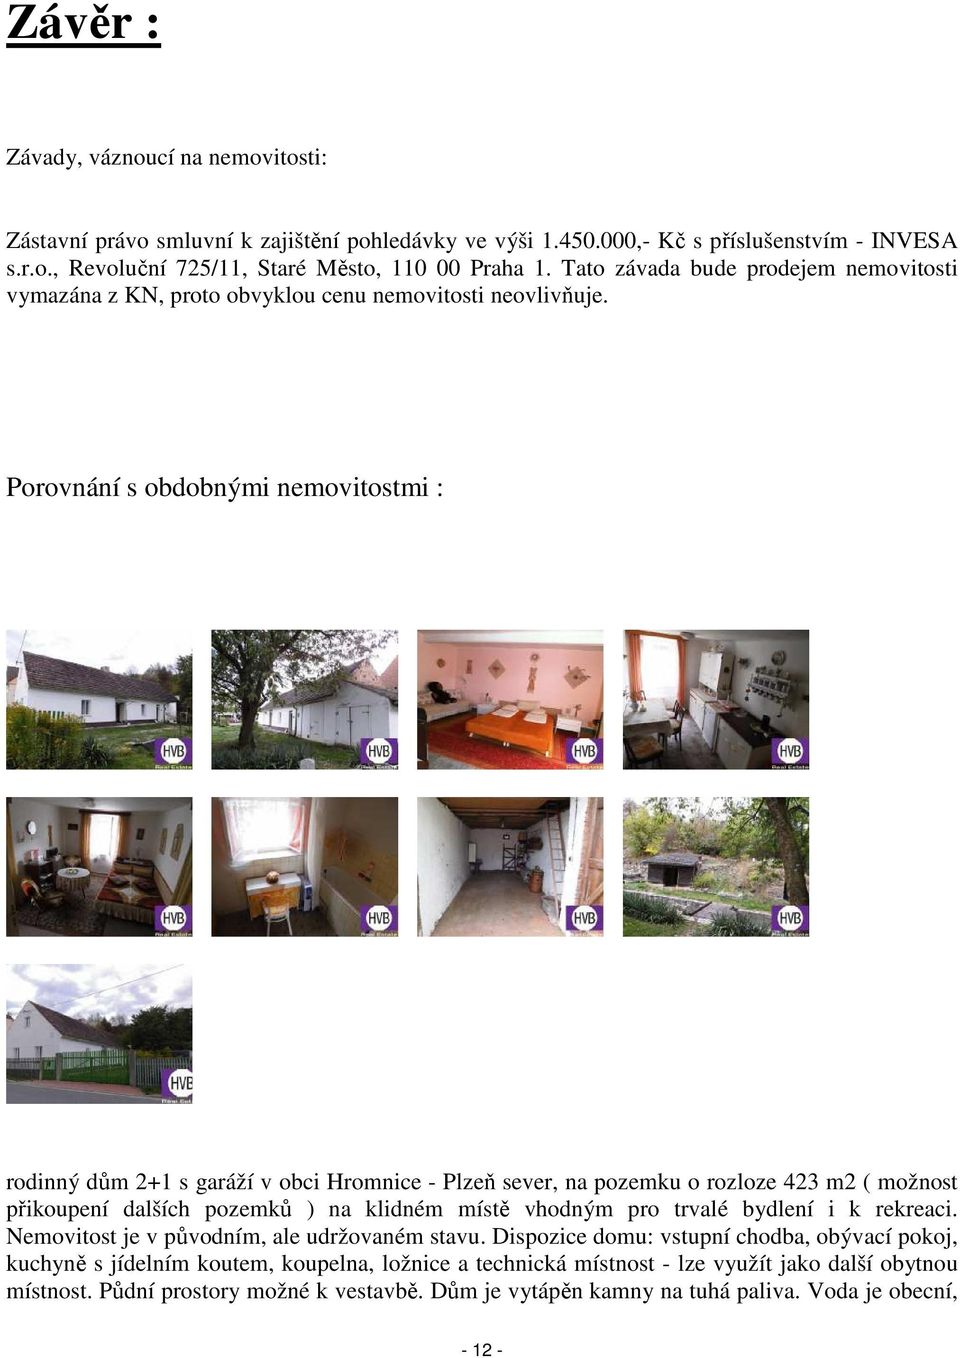 Porovnání s obdobnými nemovitostmi : rodinný dům 2+1 s garáží v obci Hromnice - Plzeň sever, na pozemku o rozloze 423 m2 ( možnost přikoupení dalších pozemků ) na klidném místě vhodným pro trvalé